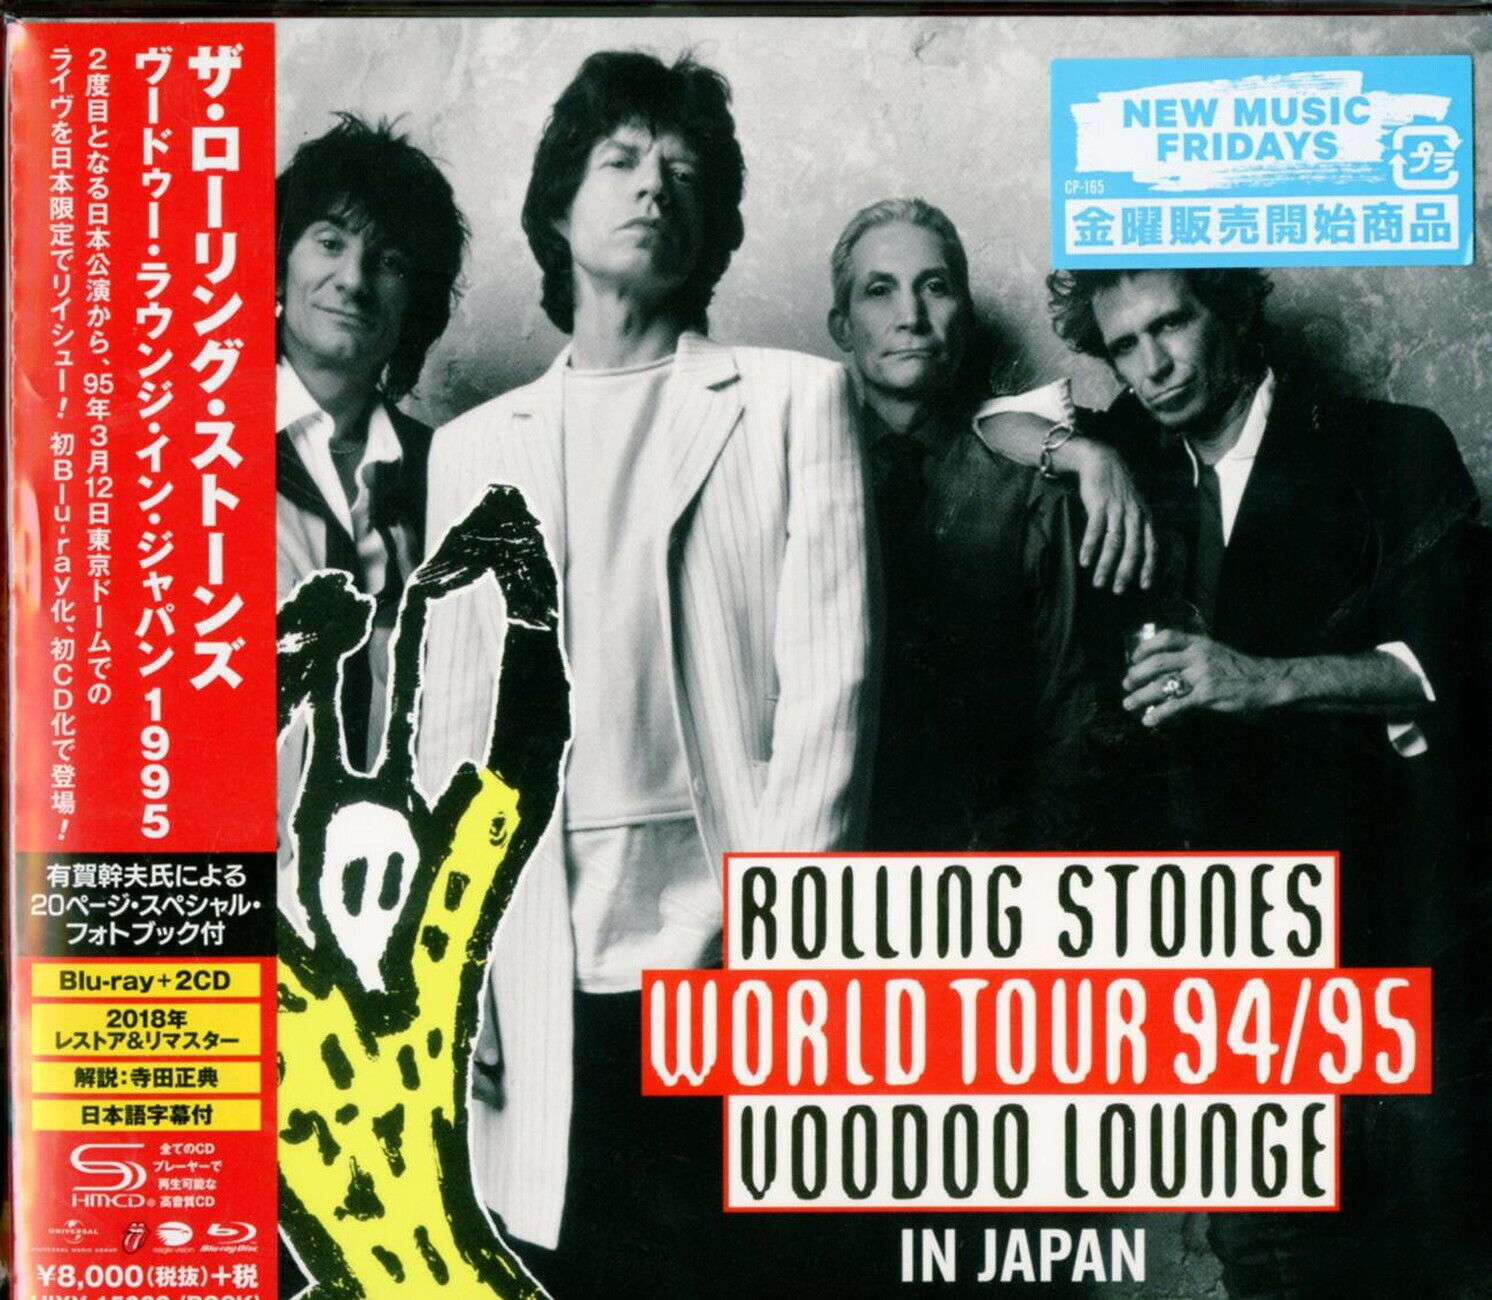 Rolling Stones-Voodoo Lounge Tokyo 1995-JAPAN Blu-Ray + 2 Shm-Cd+Book U00 Qd Ograniczona SPRZEDAŻ, wyprzedaż